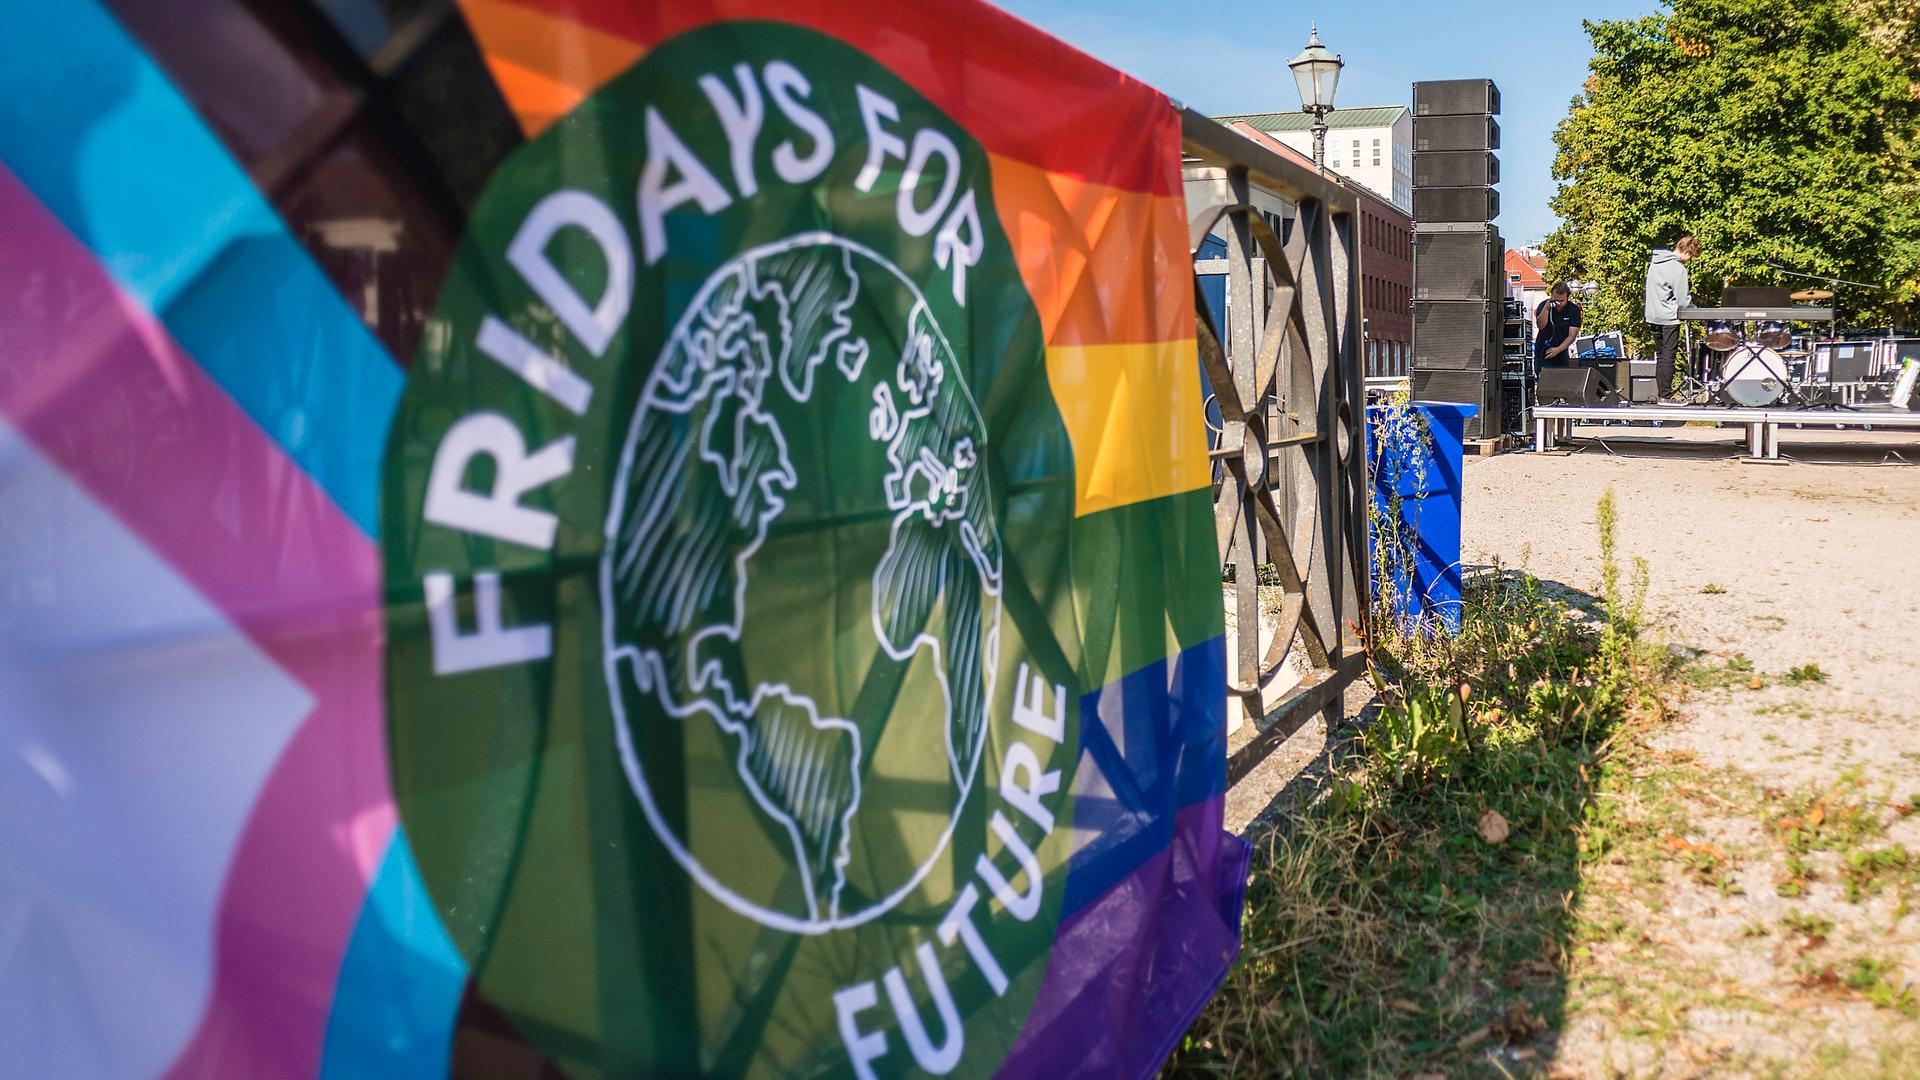 An einem Geländer hängt ein Banner der Umweltaktivisten Fridays for Future